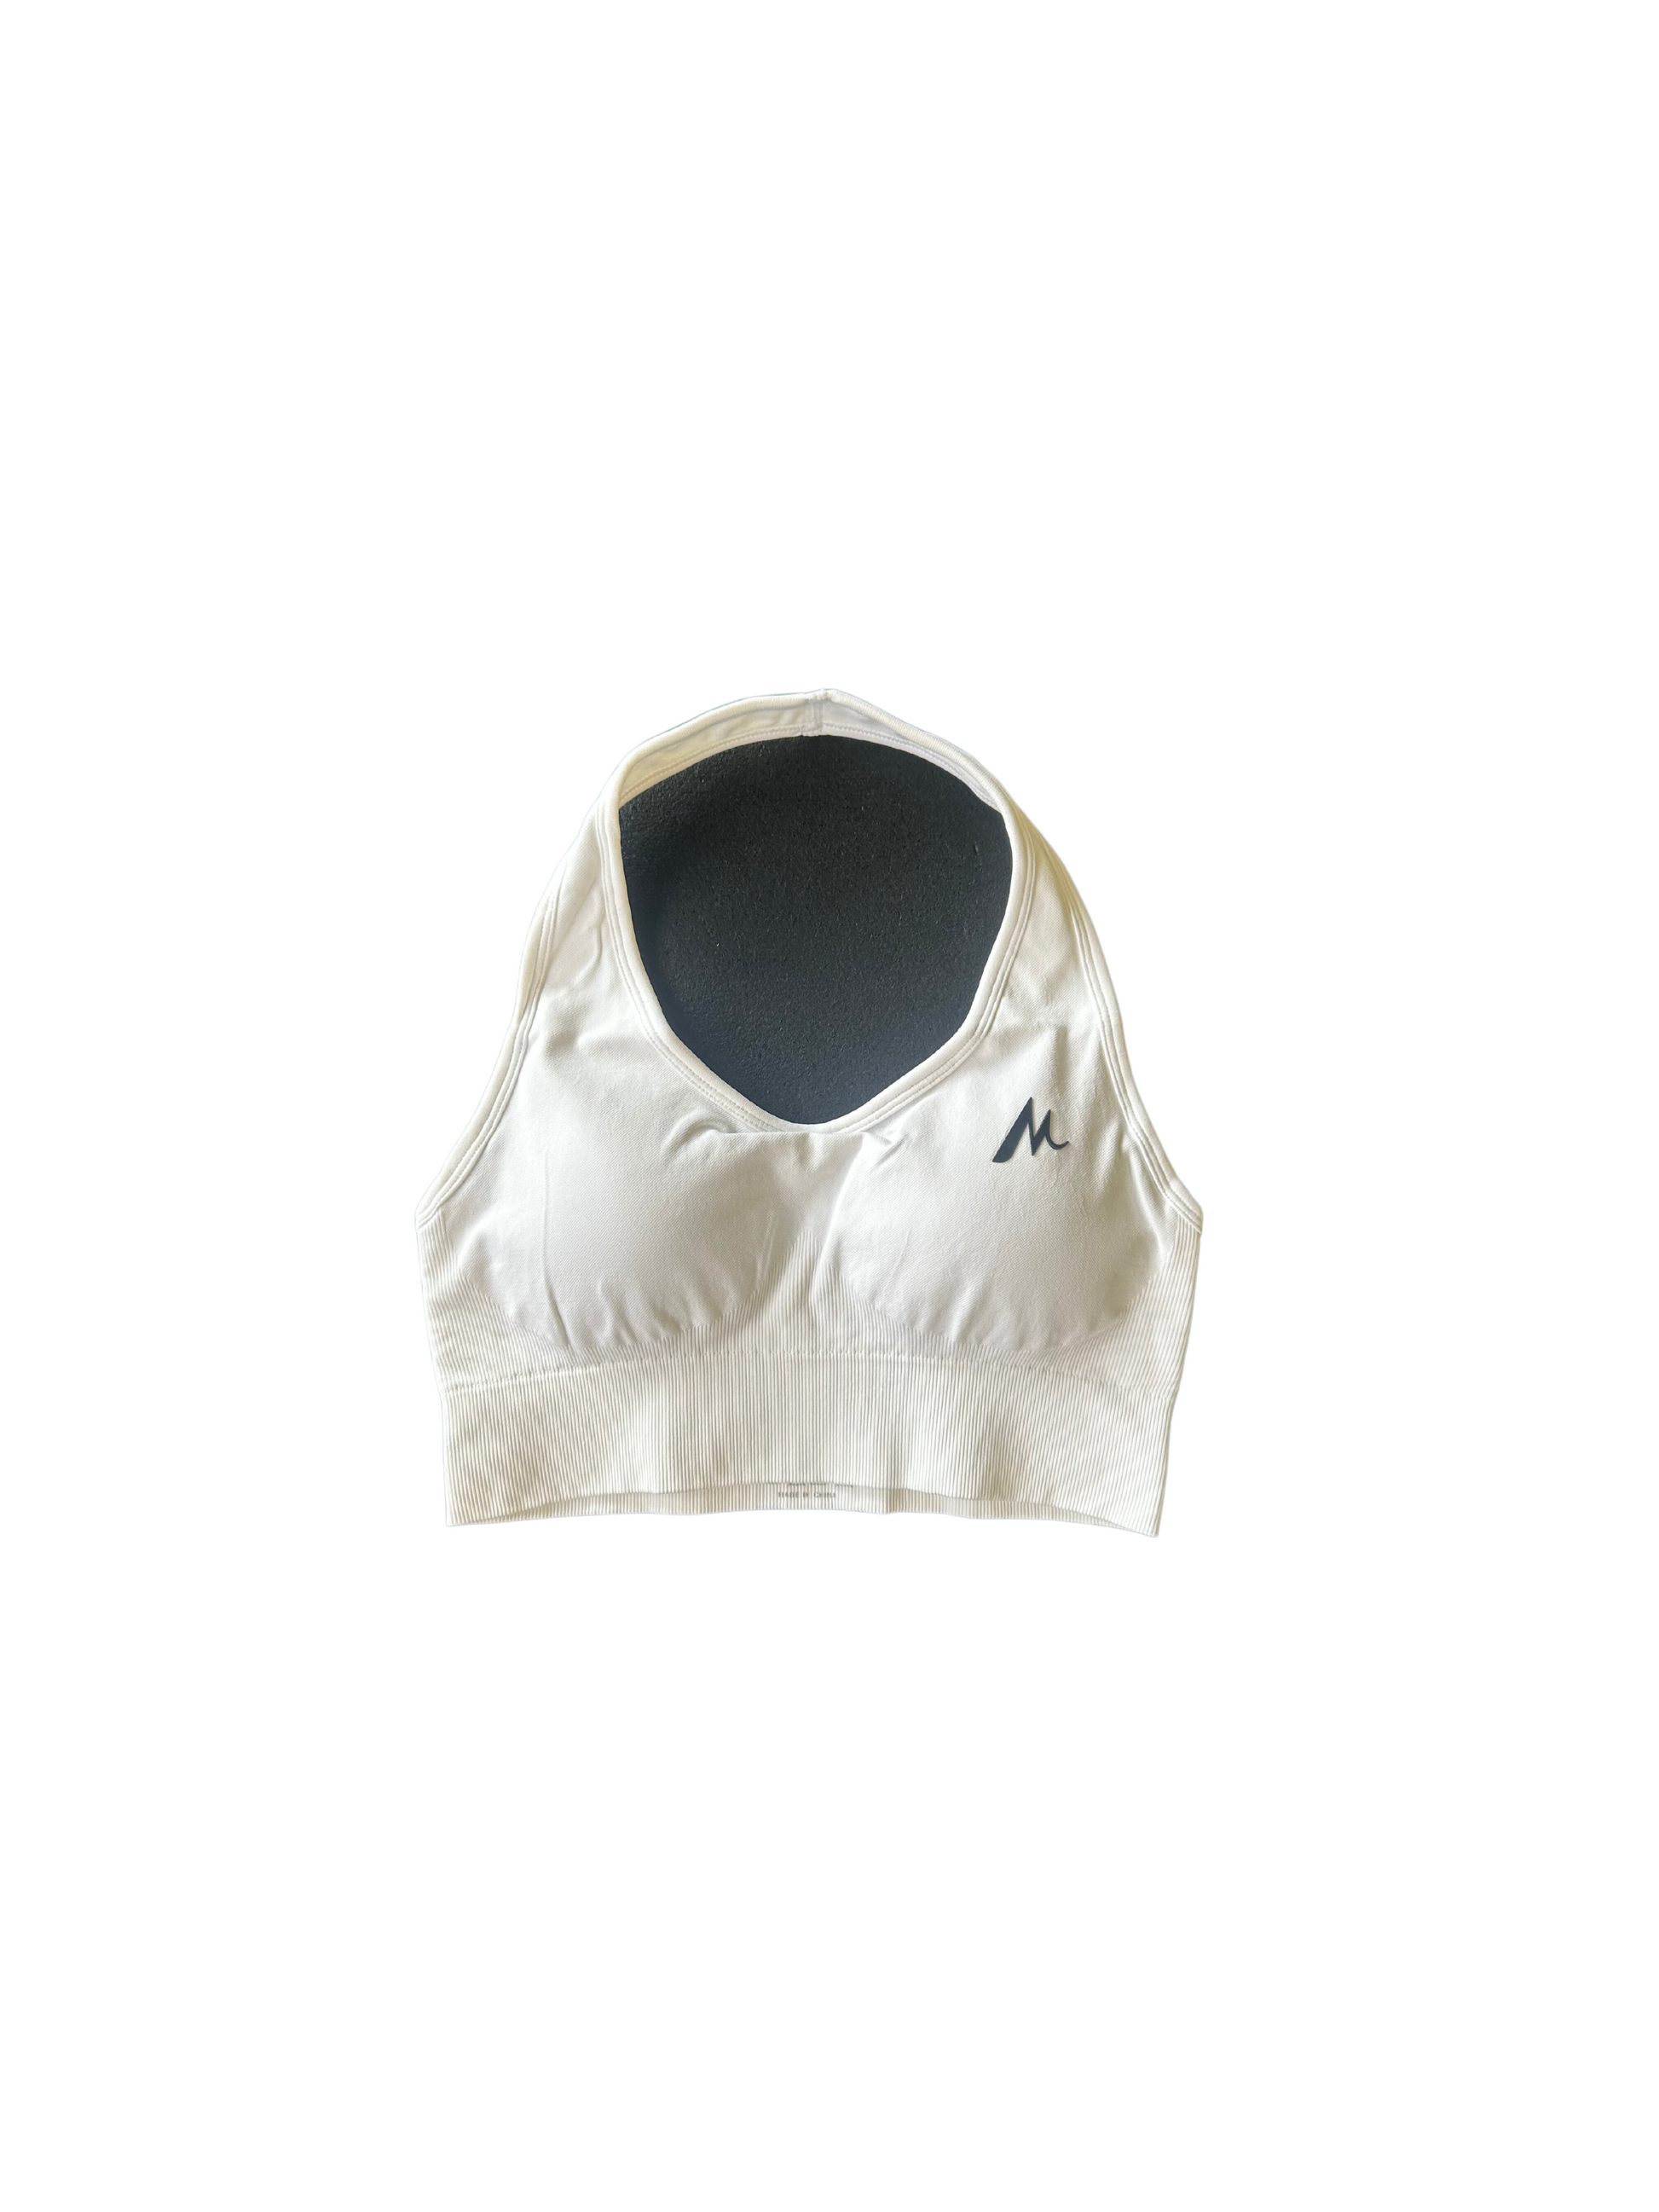 White sports bra  White sports bra, Clothes design, Sports bra